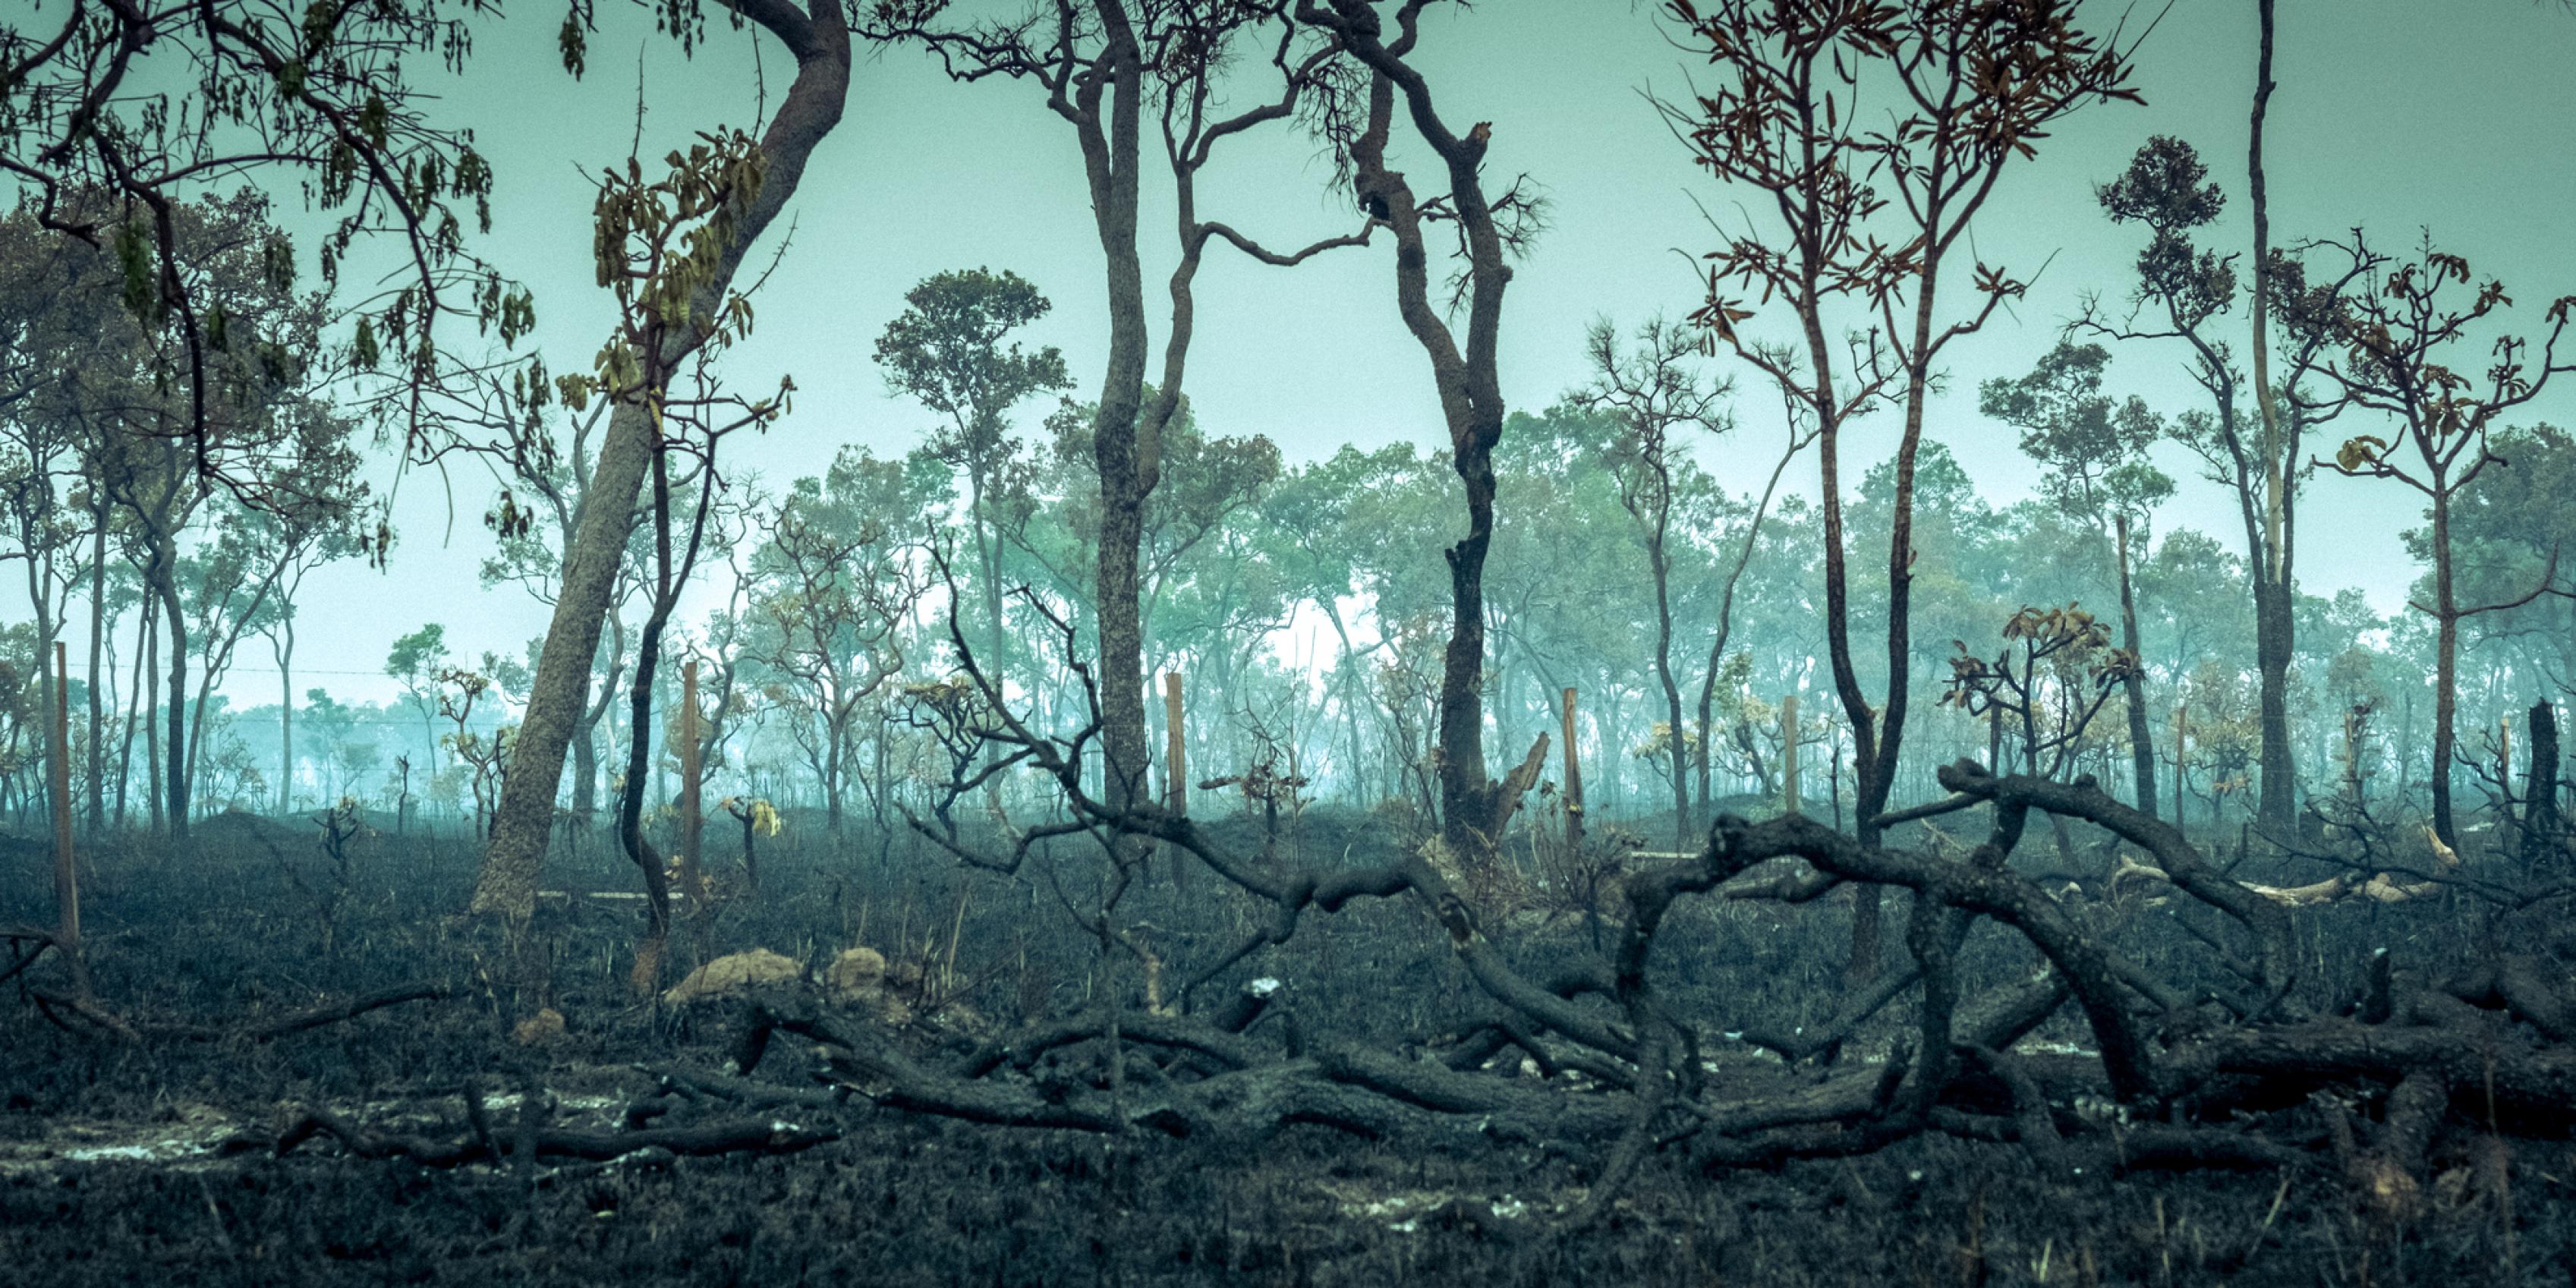 Wald nach einem Brand. Im Vordergrund schwarze Äste, über der Landschaft liegt Rauch, im Hintergrund wenige Bäume, die noch stehen. Ein Anblick der Naturzerstörung.